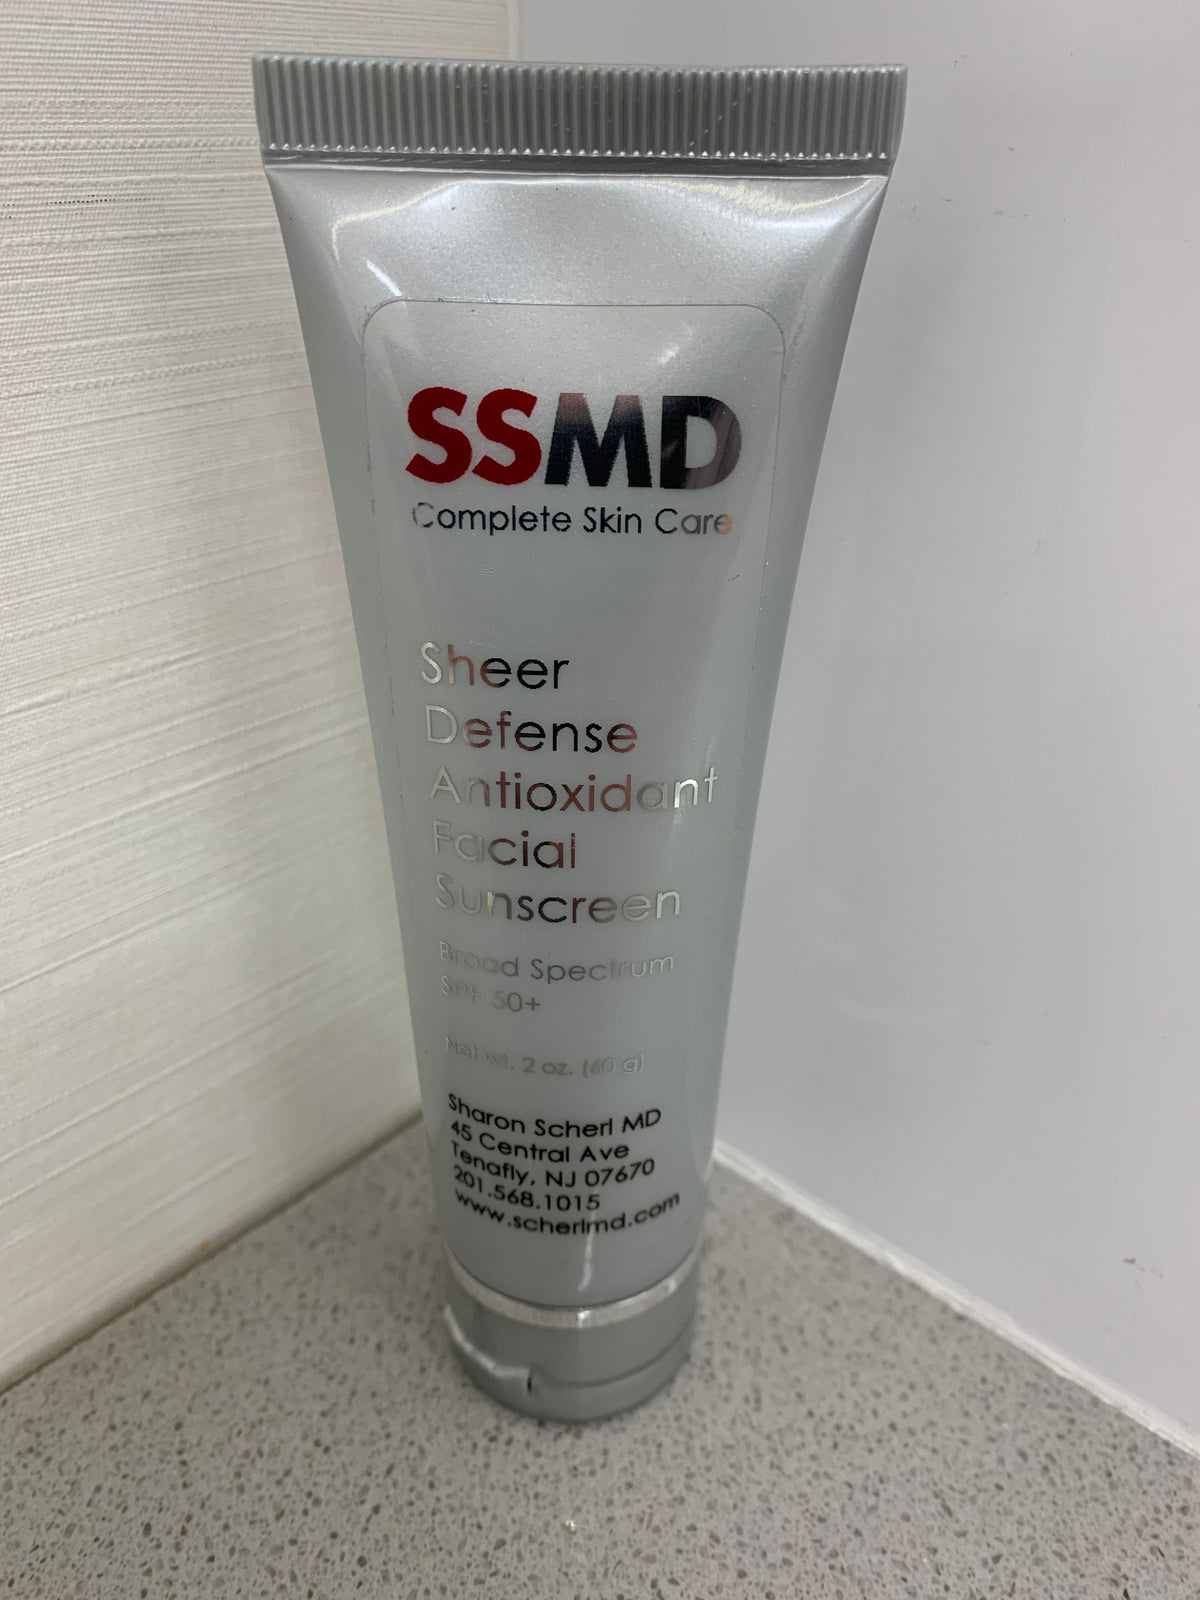 SSMD Sheer Defense Antioxidant Facial Sunscreen